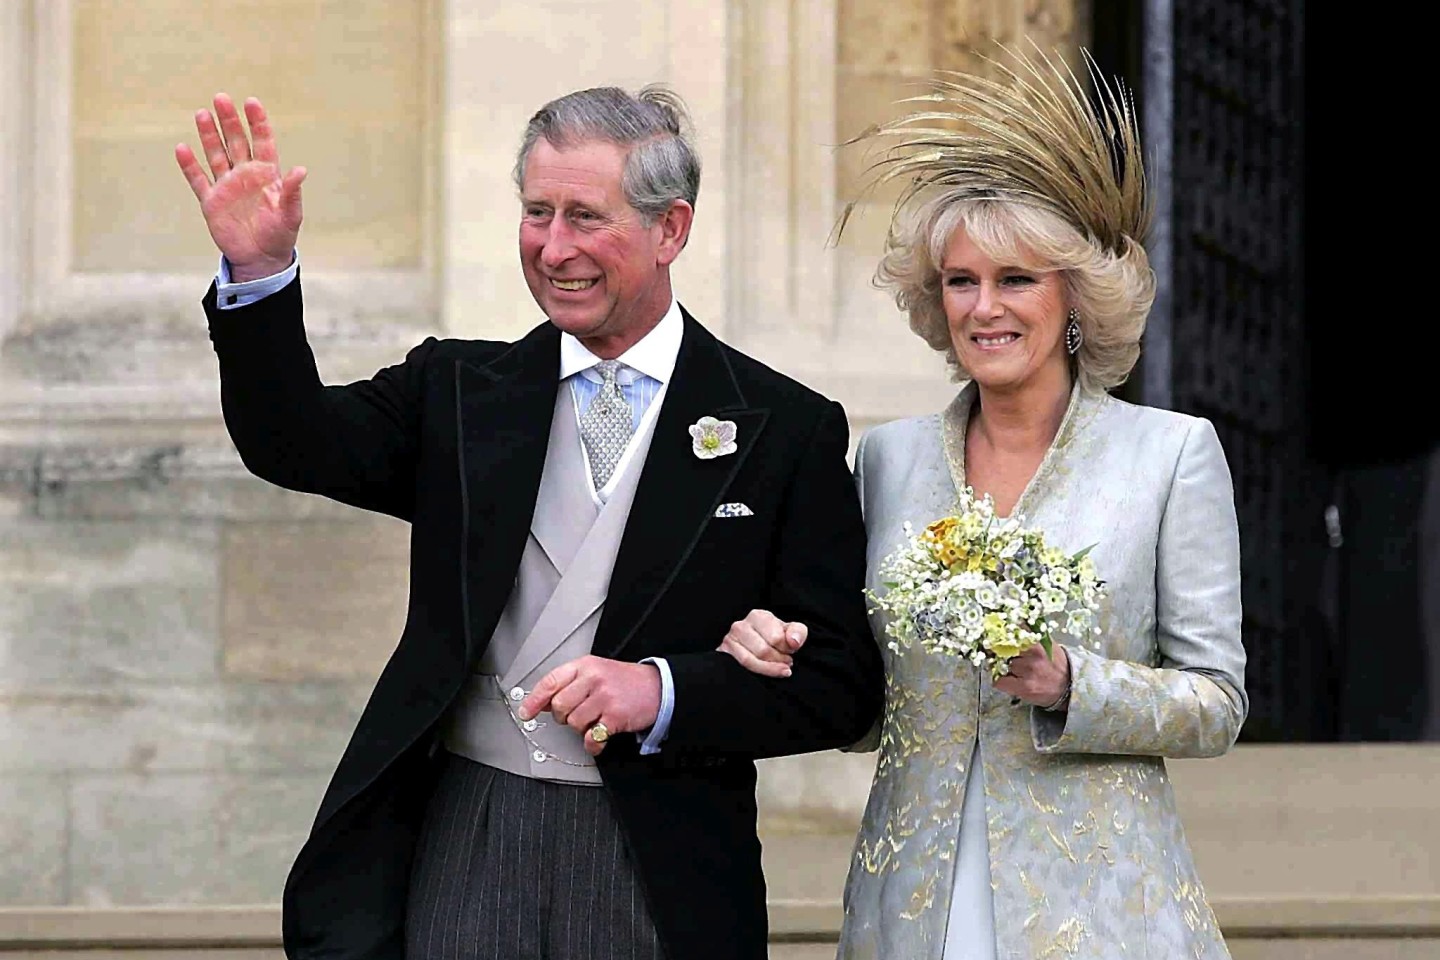 Charles und Camilla verlassen nach einem Gebets- und Weihegottesdienst anlässlich ihrer Trauung die St. George's Chapel auf Schloss Windsor (2005).